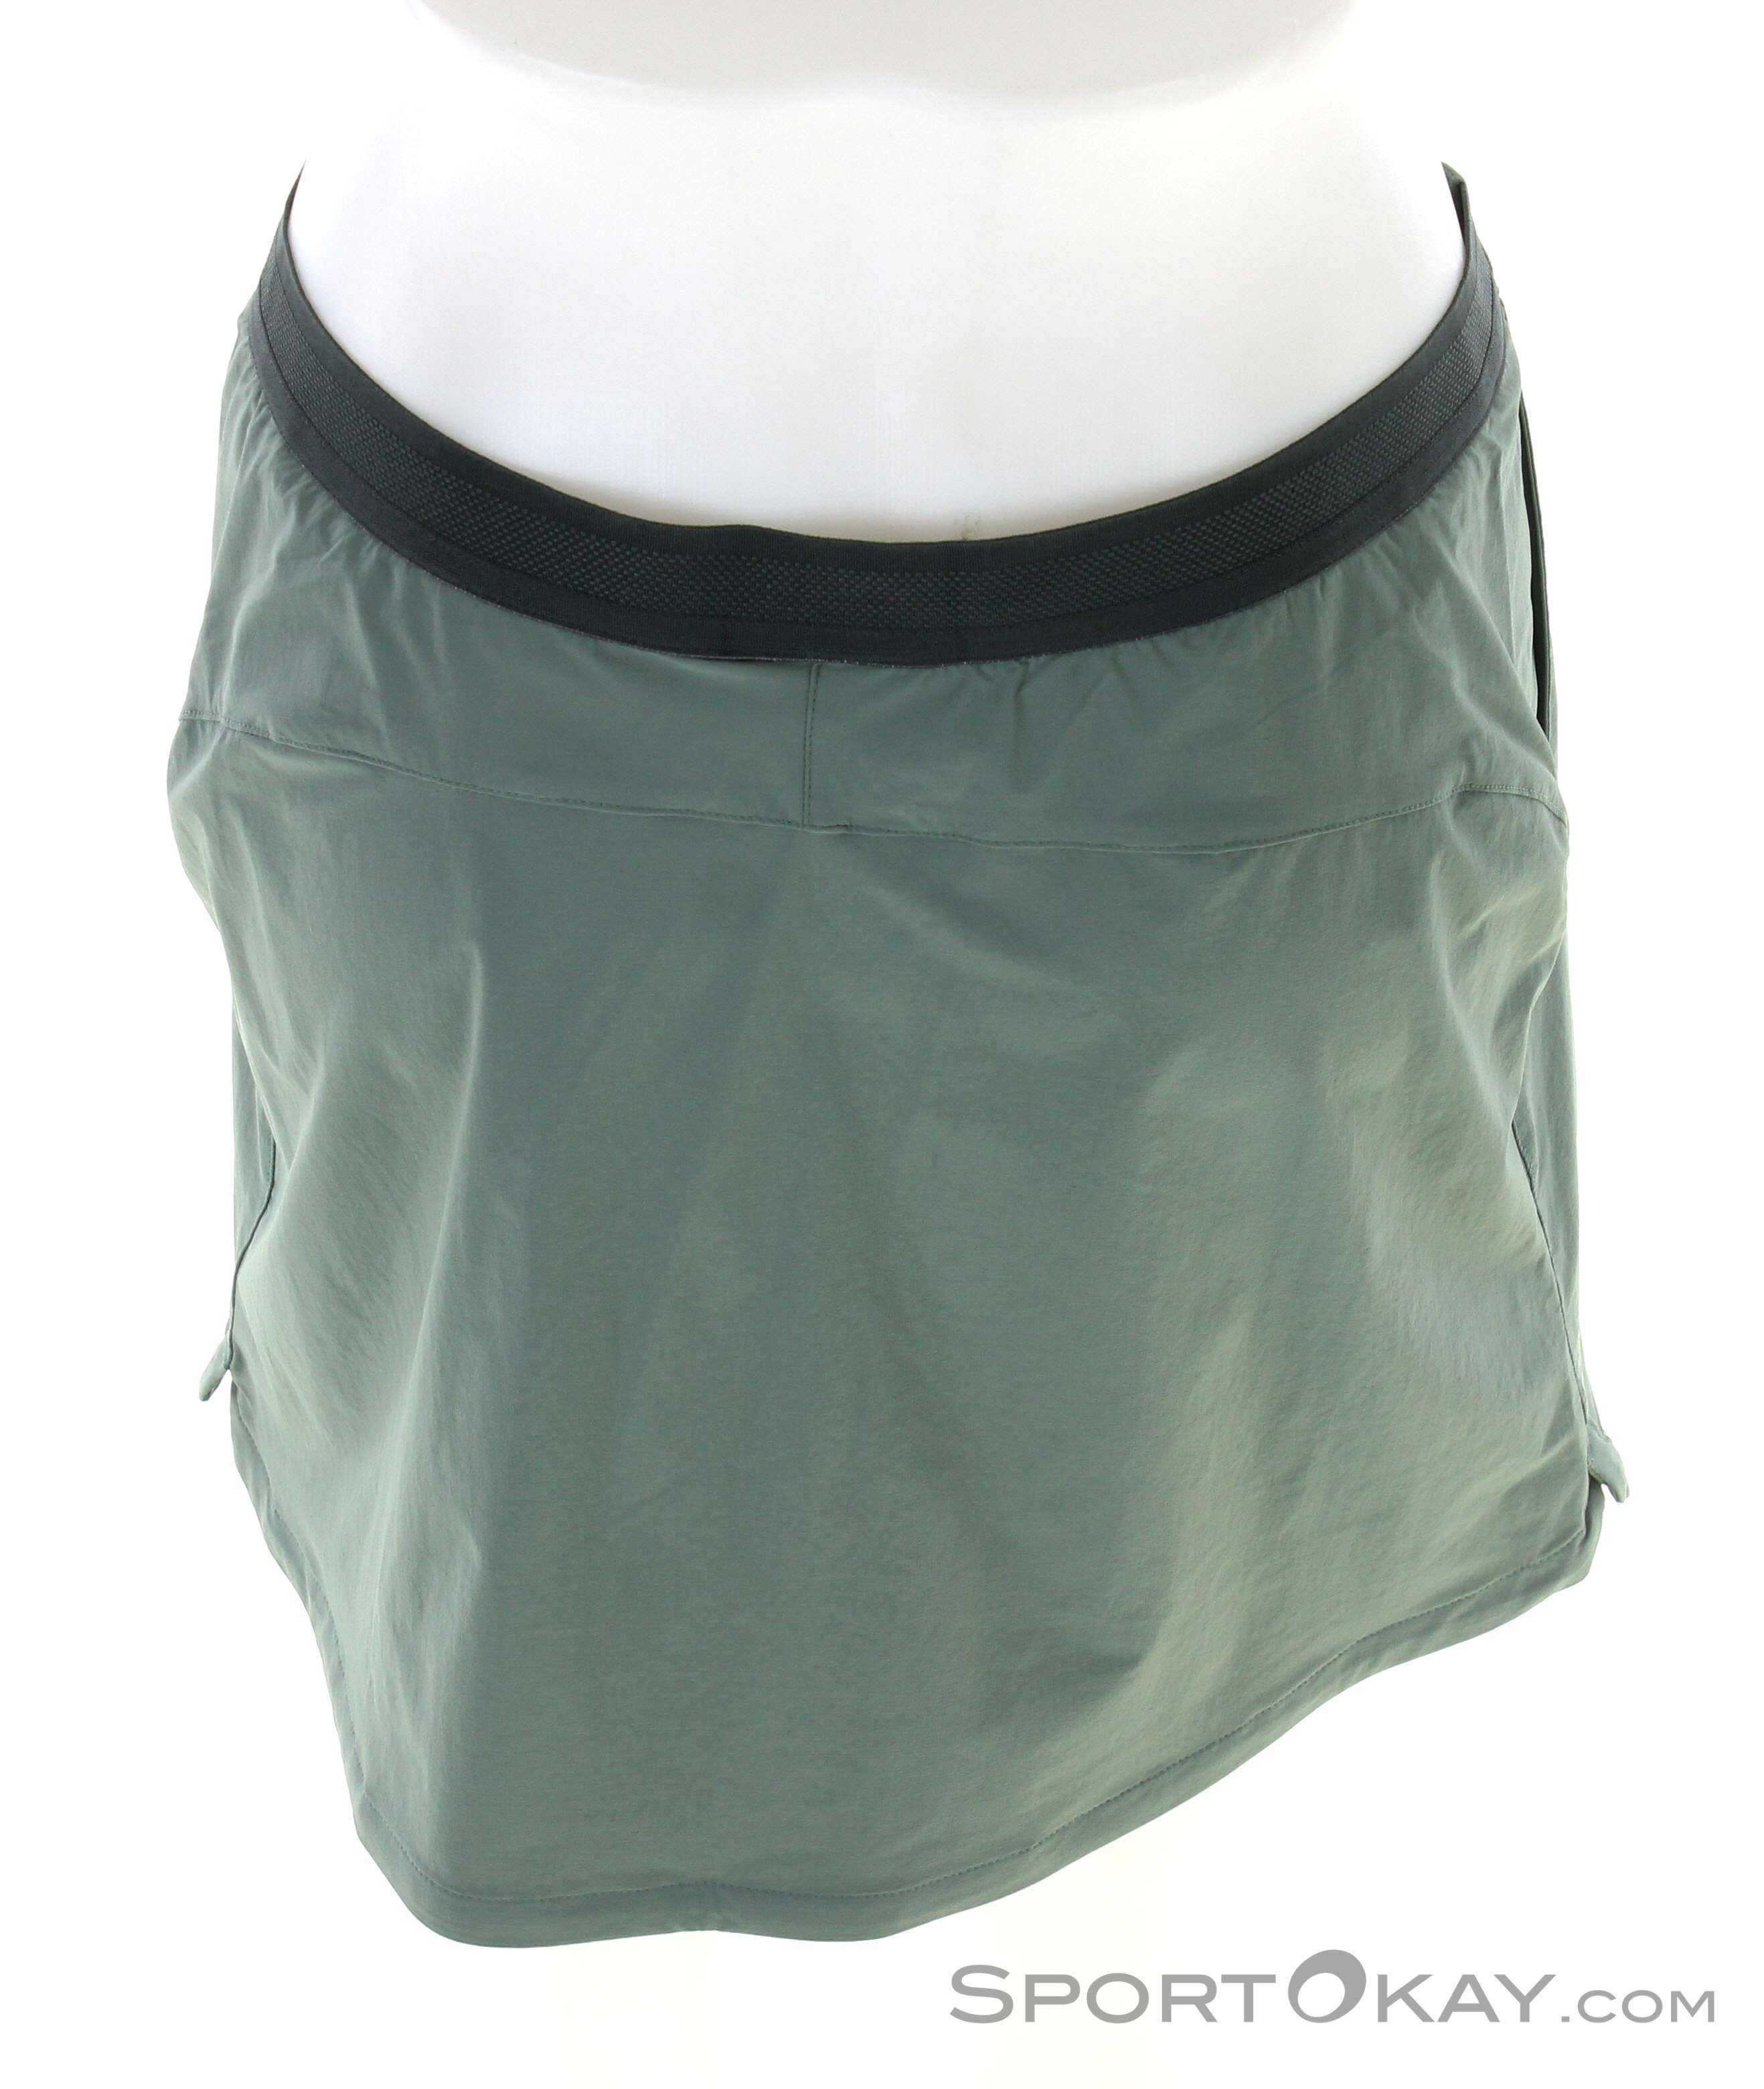 Hilltop Skort Skirt Trail Outdoor Wolfskin Outdoor - Outdoor - Clothing Women - All - Pants Jack